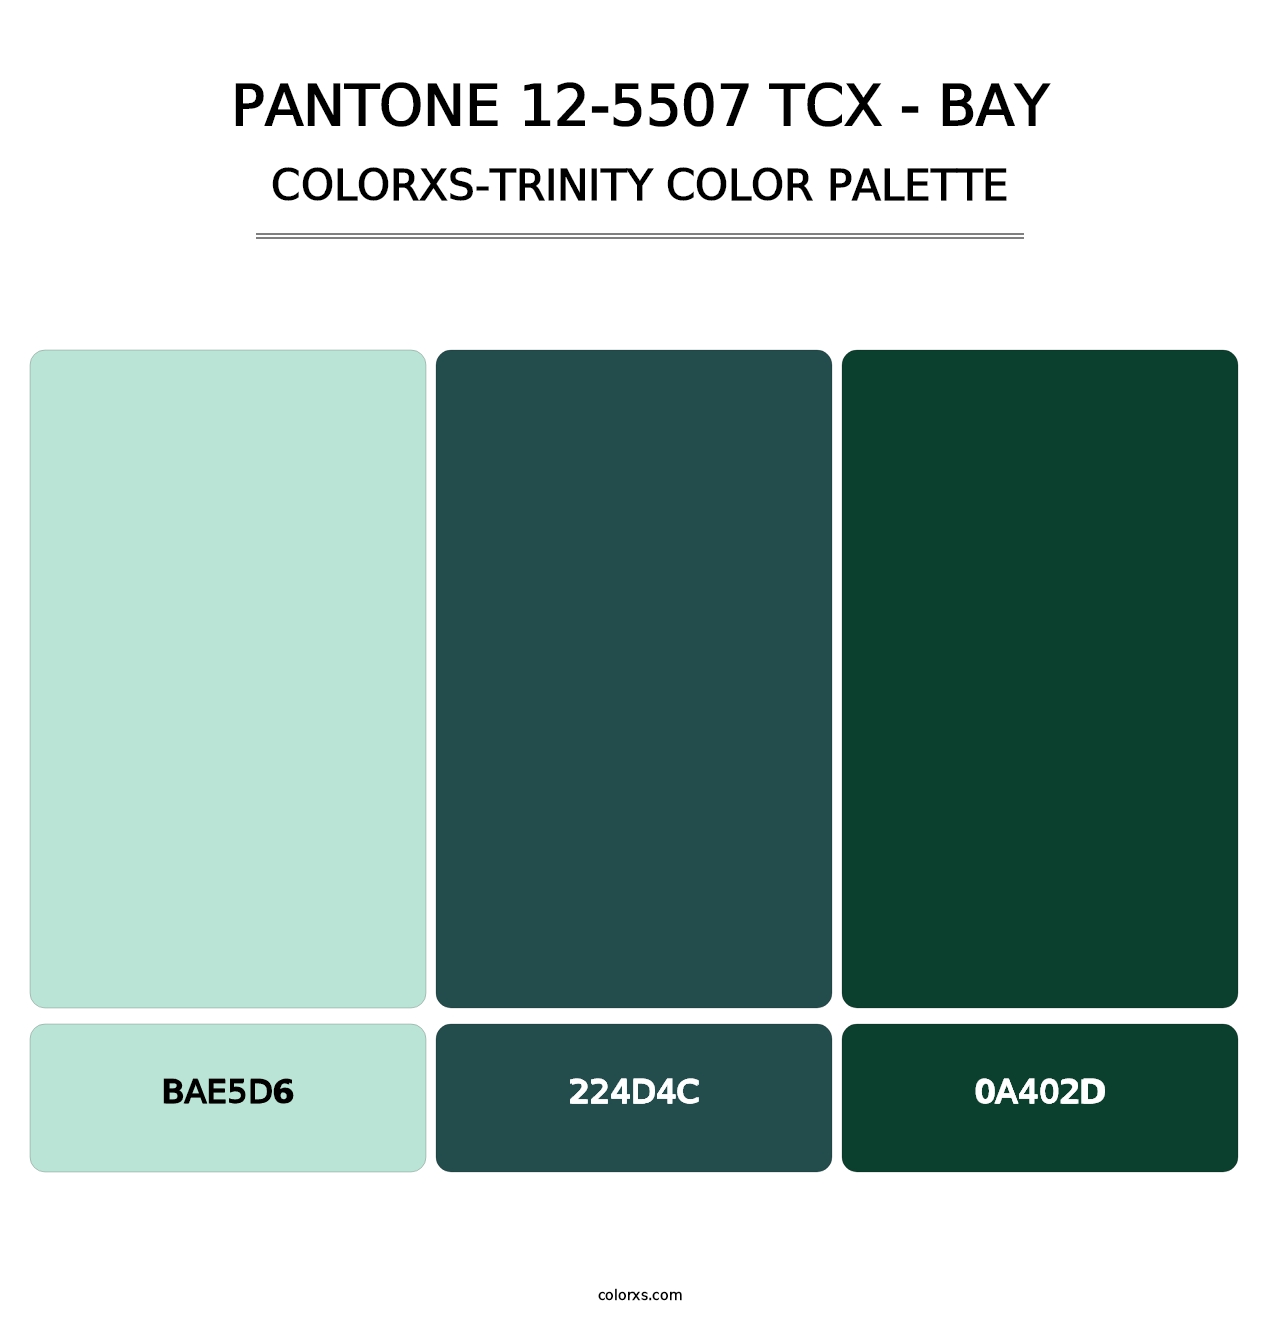 PANTONE 12-5507 TCX - Bay - Colorxs Trinity Palette